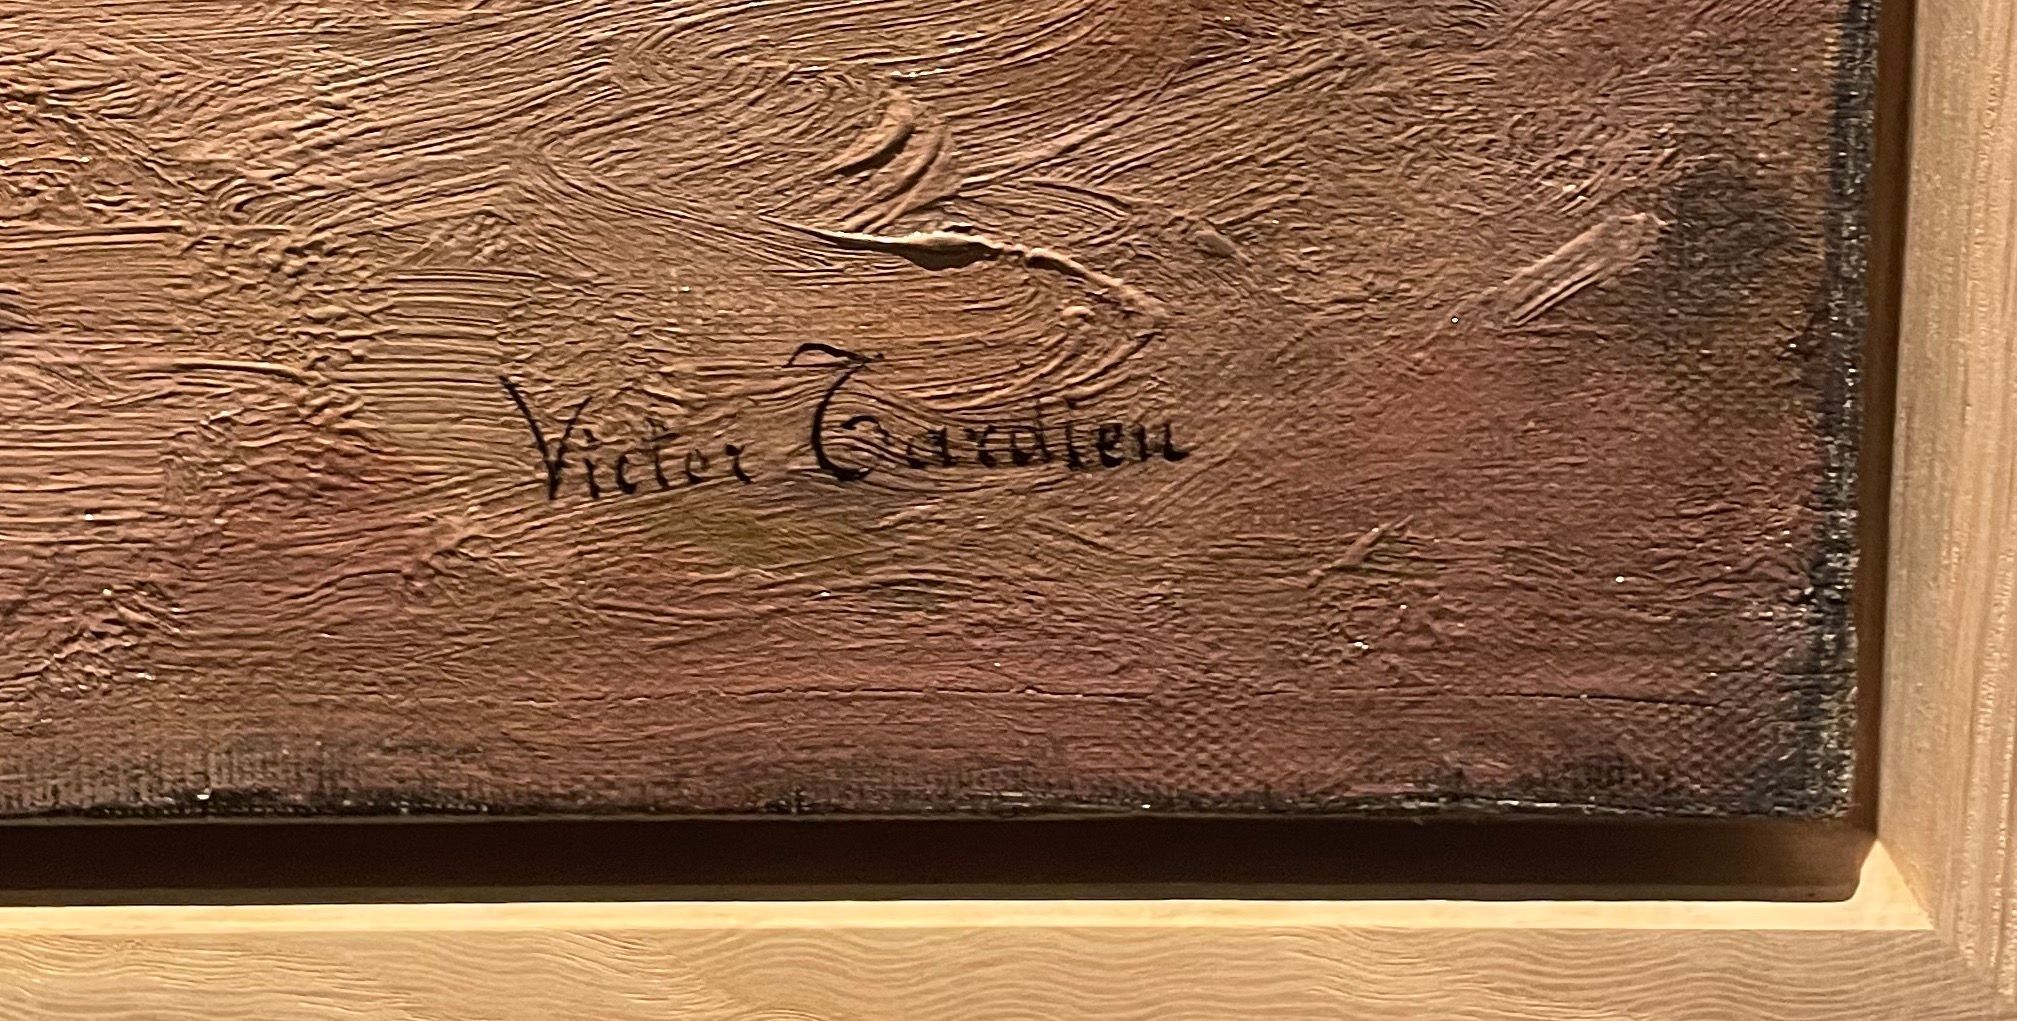 Signature de Victor Tardieu